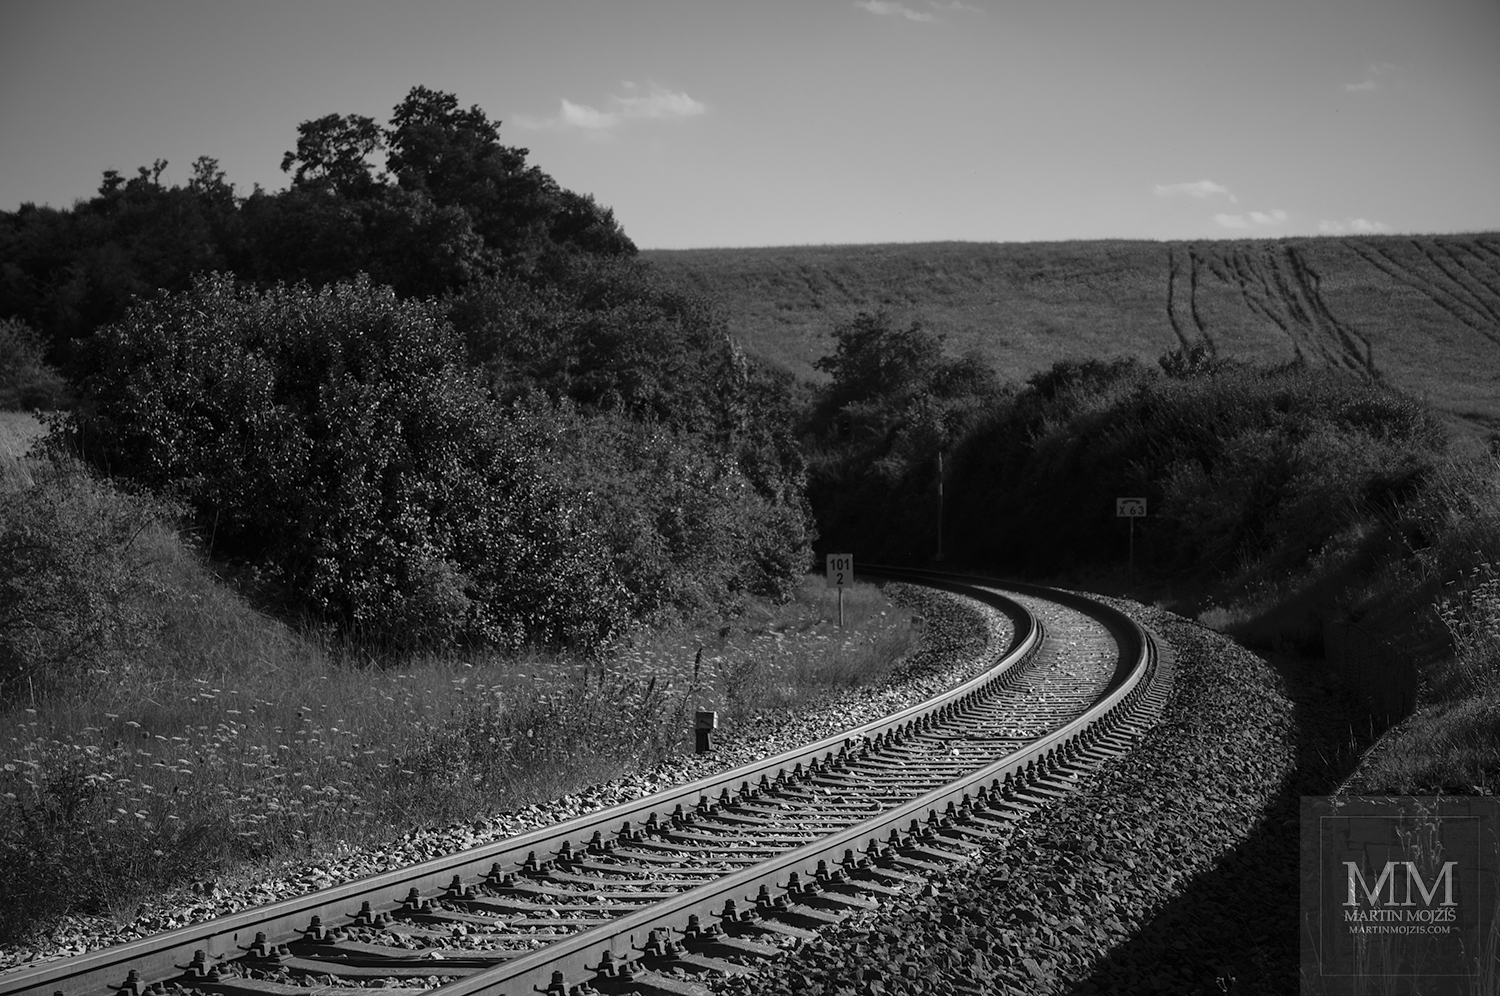 Železniční trať v oblouku mezi poli. Umělecká černobílá fotografie s názvem OBLOUK A POLE. Fotograf Martin Mojžíš.